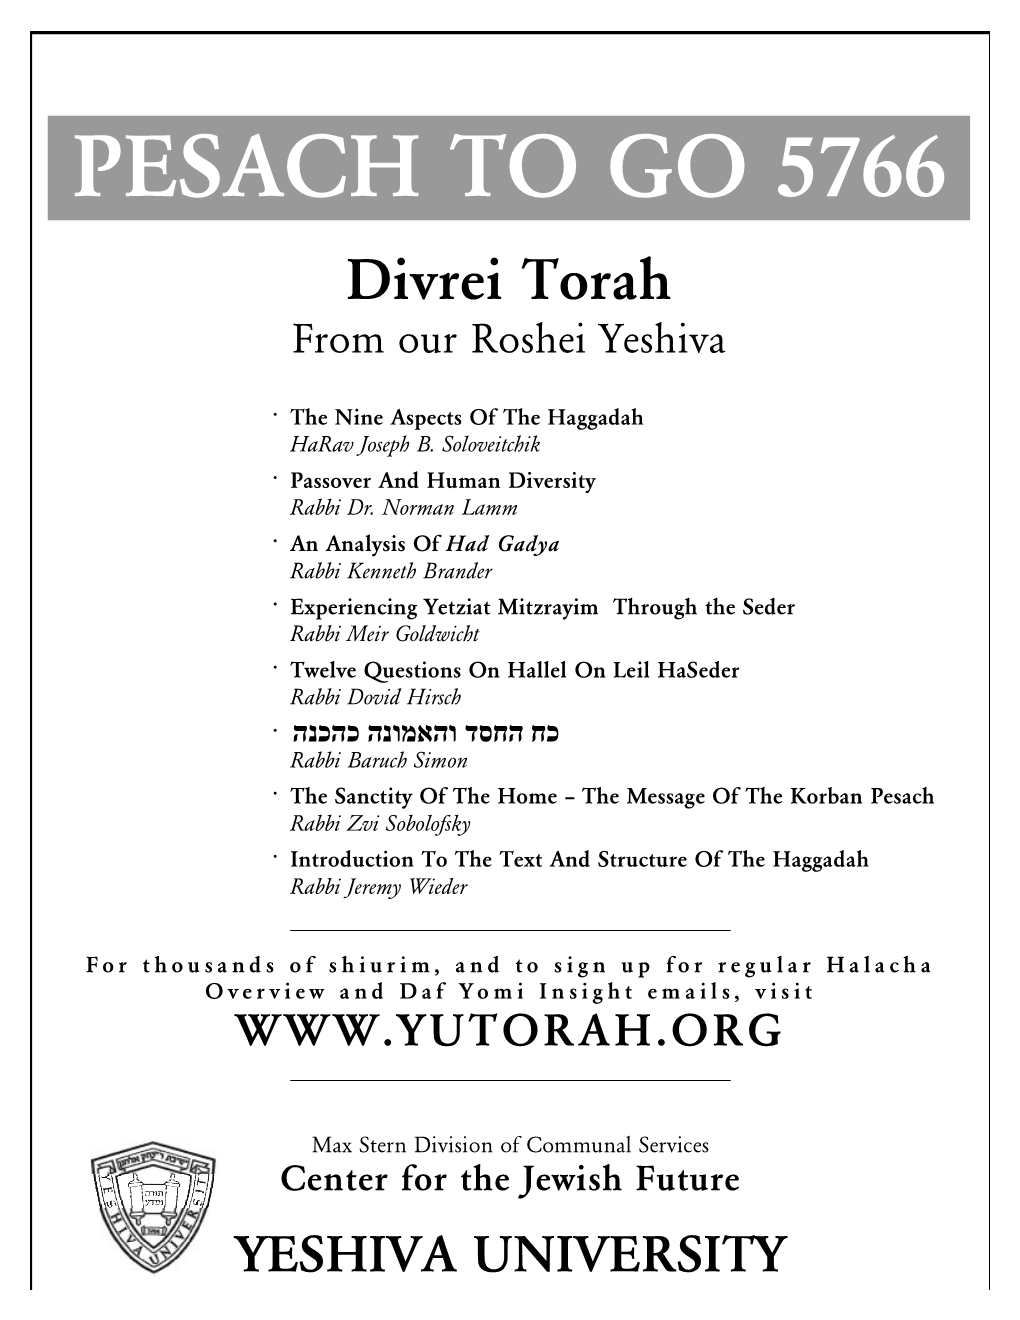 PESACH to GO – Divrei Torah from Our Roshei Yeshiva 1